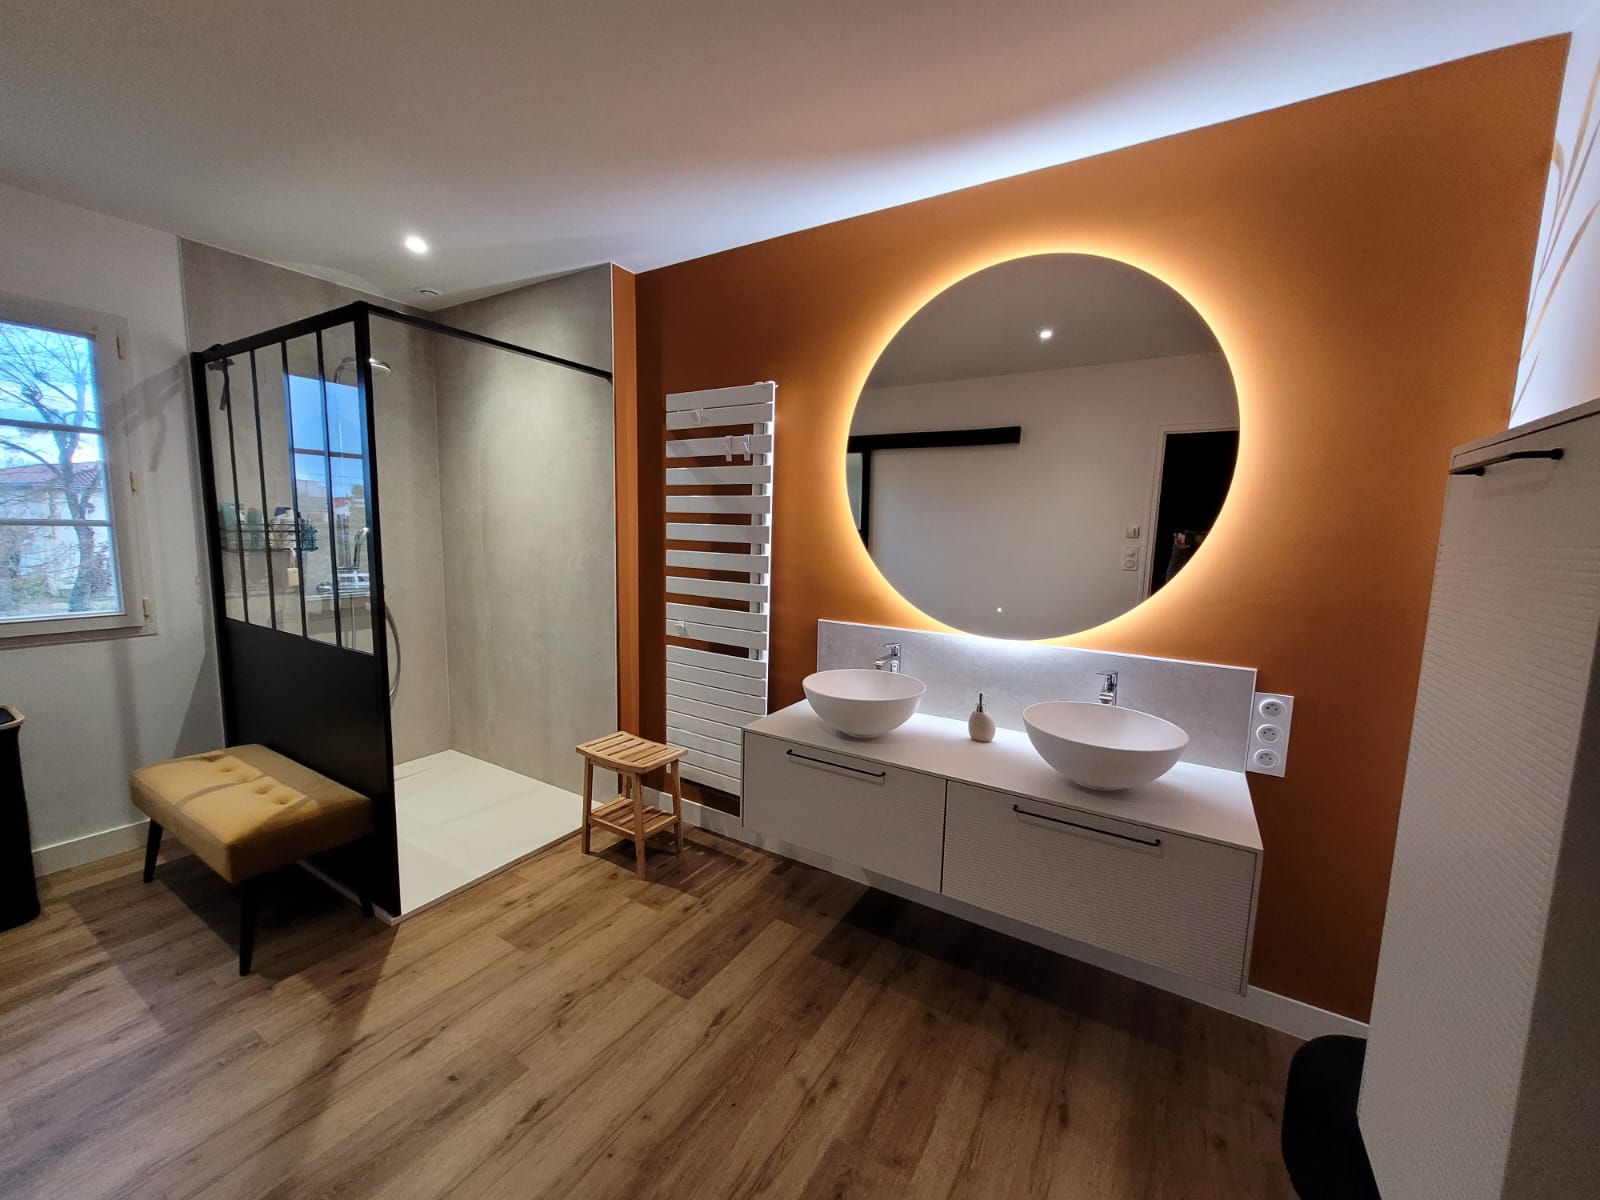 Rénovation d'une salle de bain par l'architecte d'intérieur Maggy Durand-Moreau. Douche et lavabos.